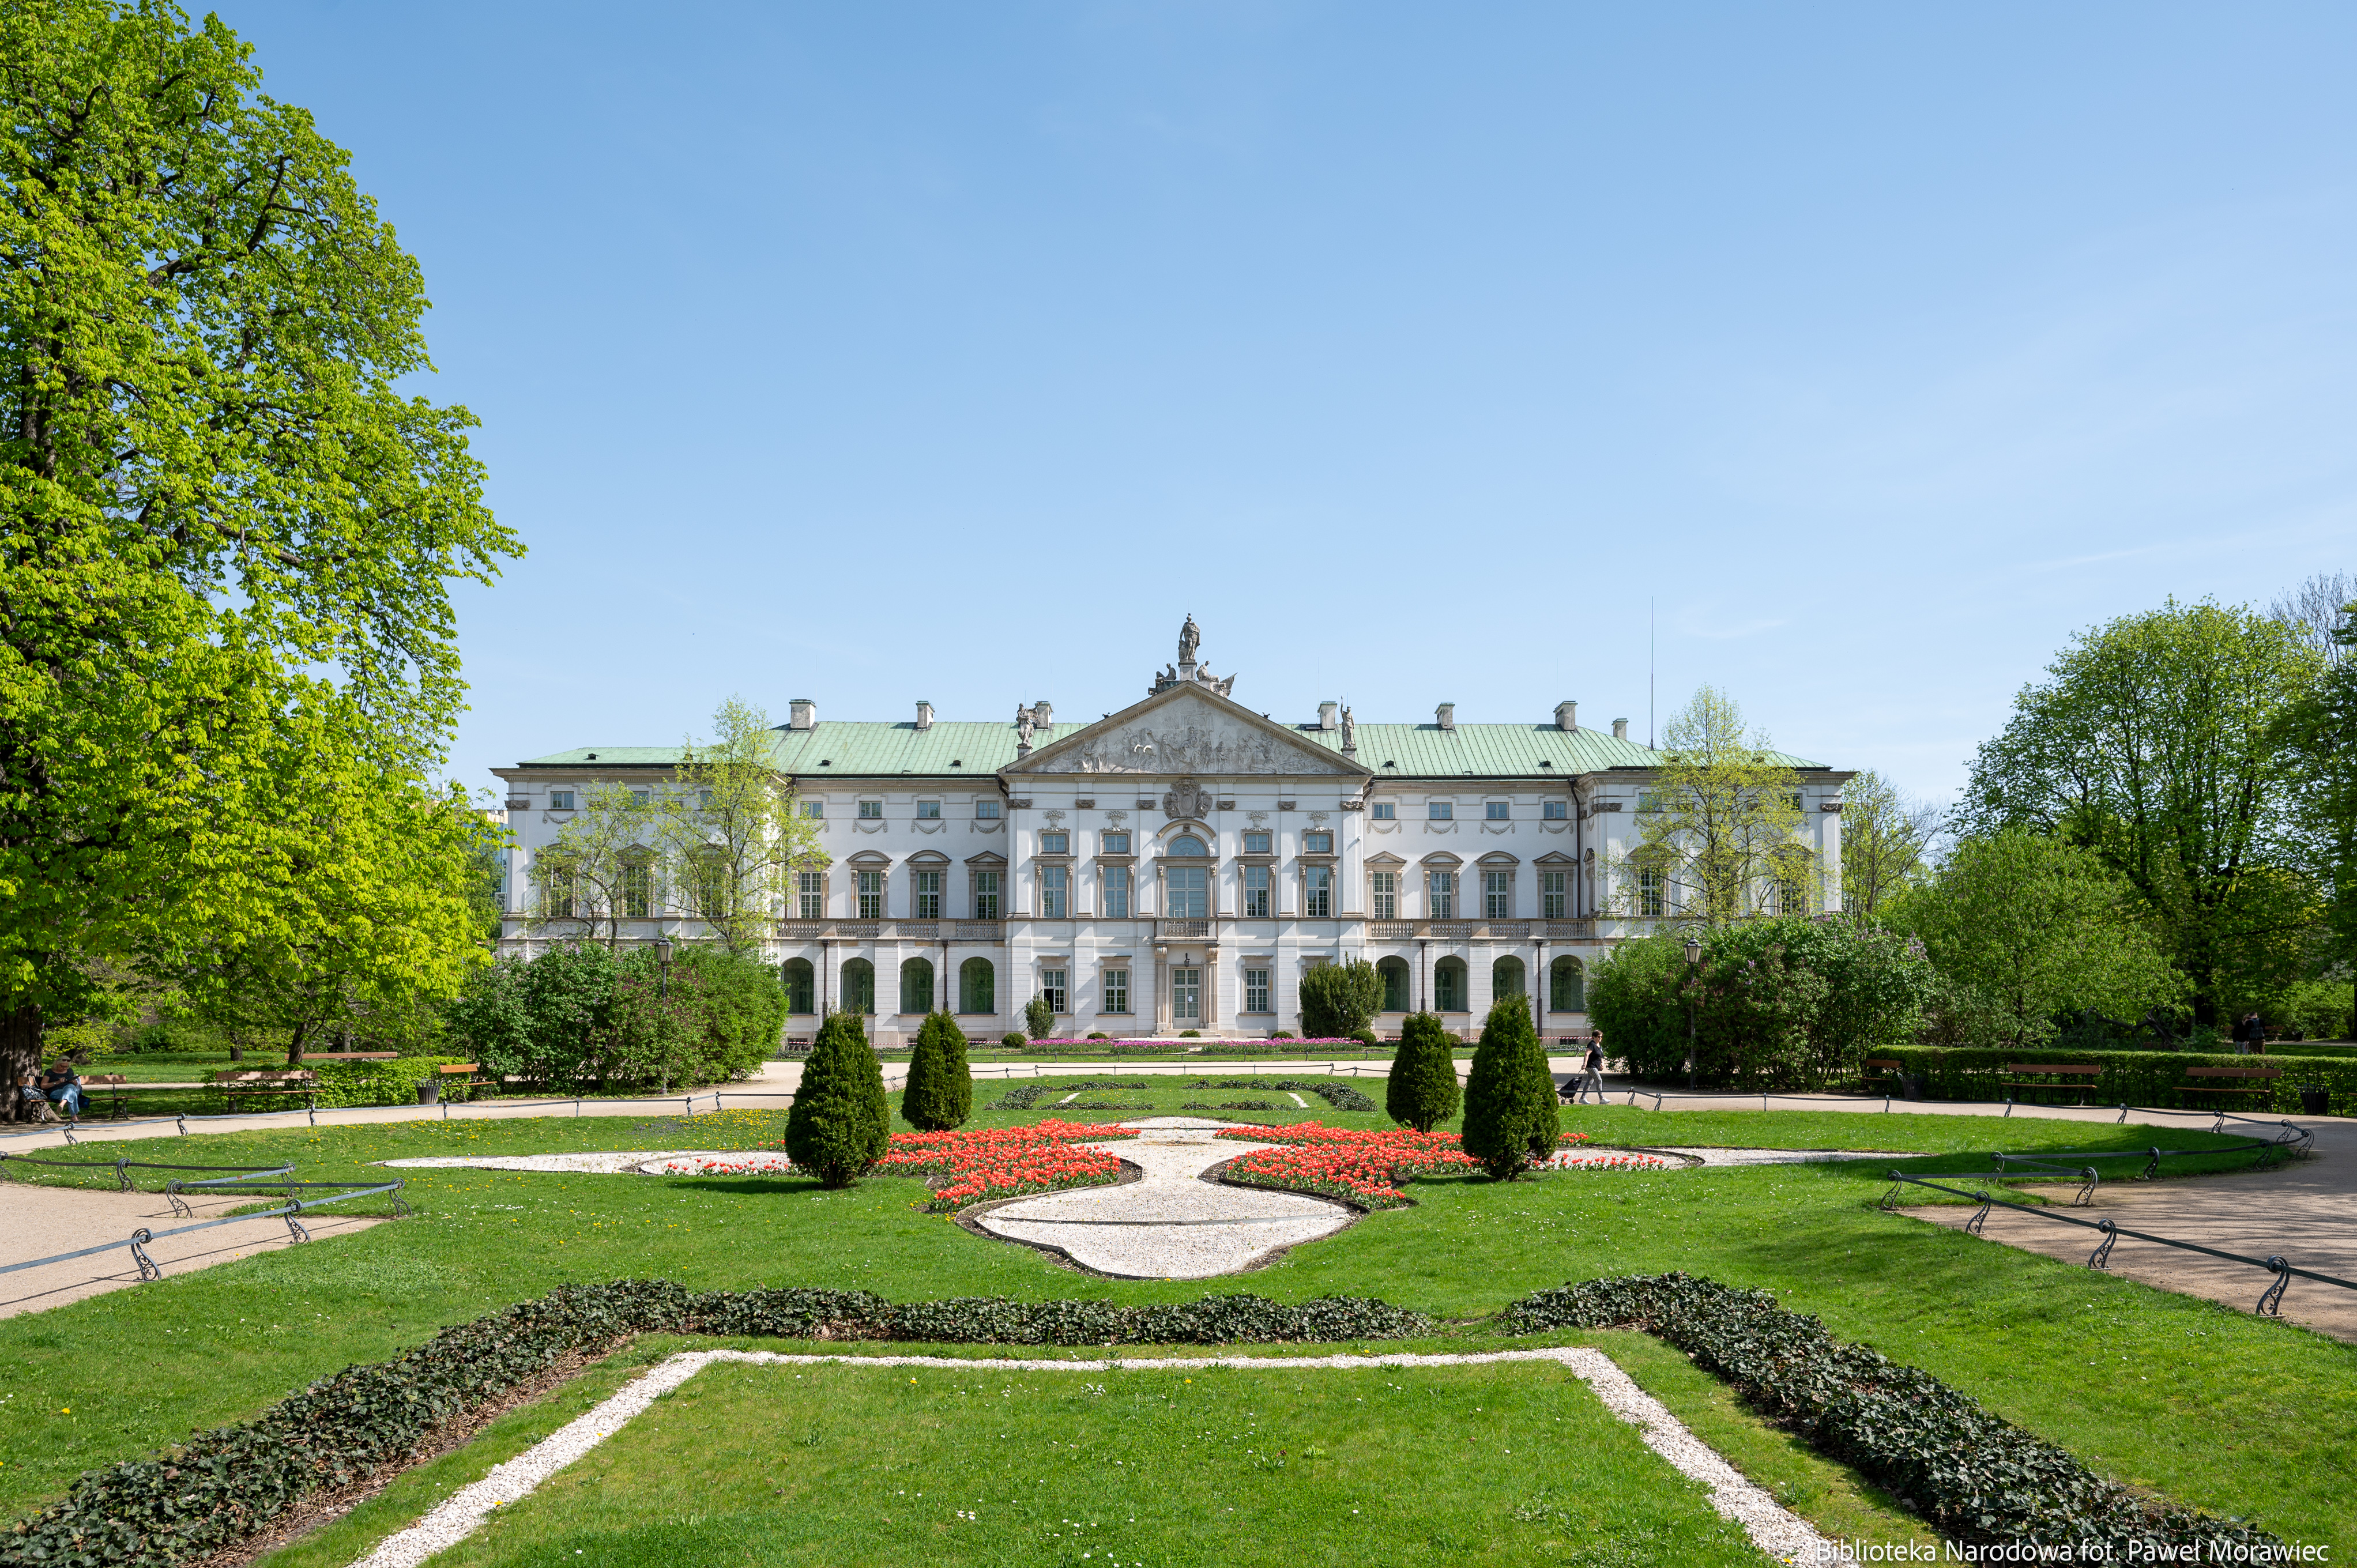 Pałac Krasińskich - widok od tyłu (źródło: Biblioteka Narodowa, fot. Paweł Morawiec)